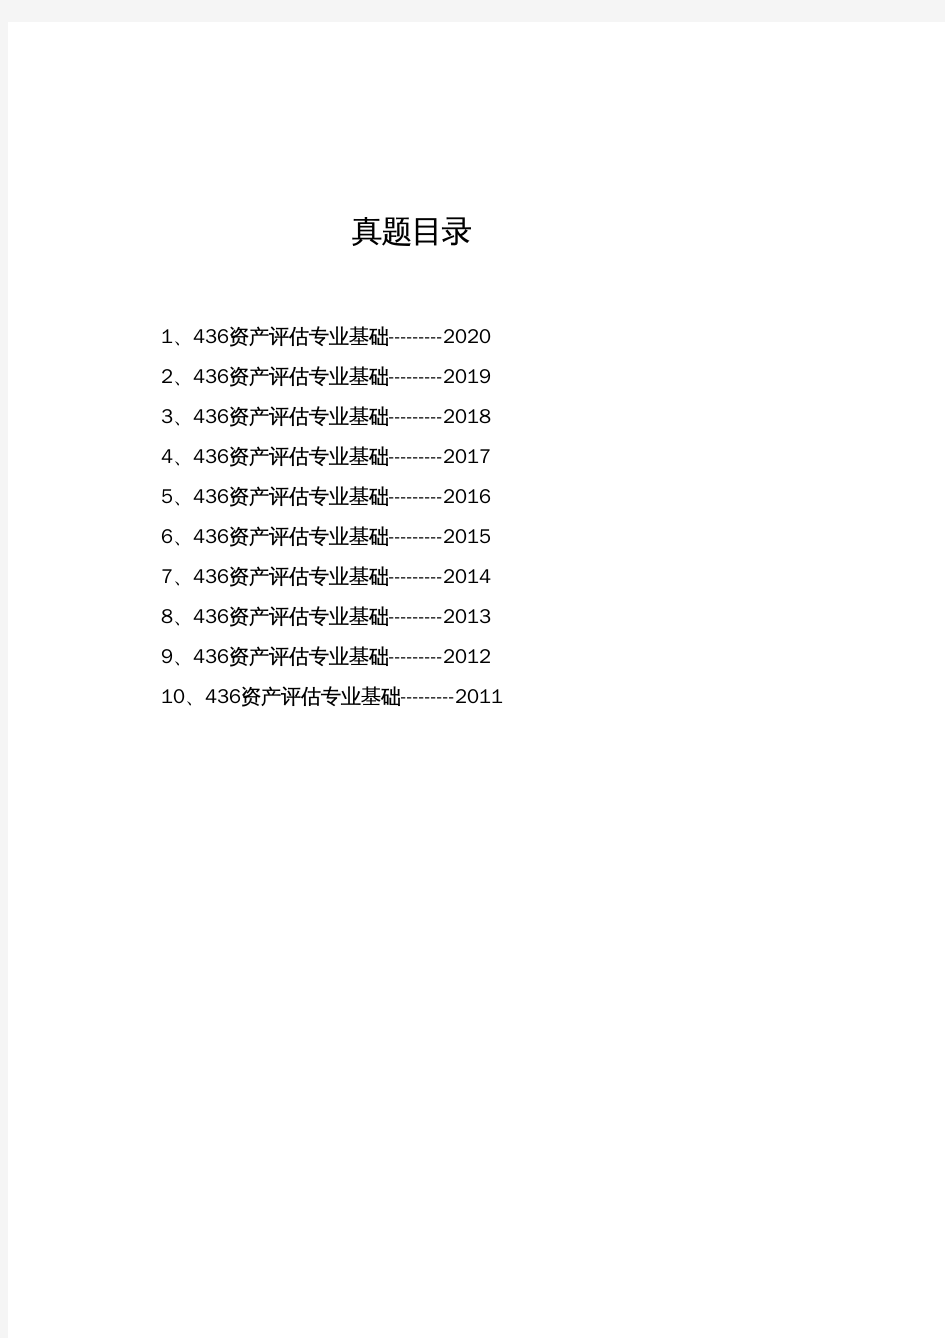 暨南大学《436资产评估专业基础》(2020-2011)[官方-完整版]历年考研真题